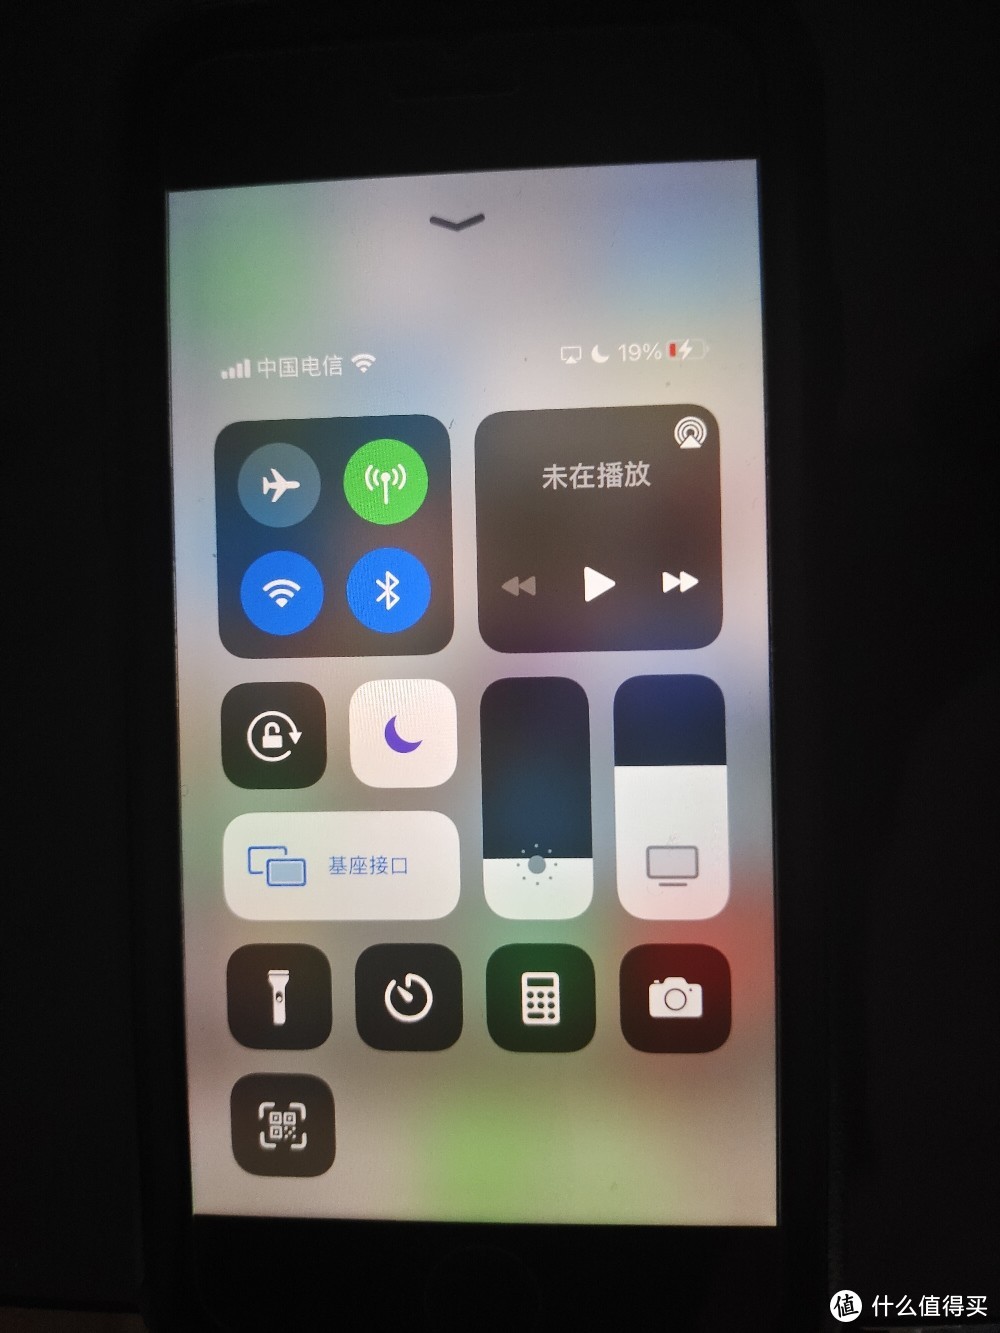 可以看到苹果有线连接显示的是基座接口。投屏几乎无延迟。